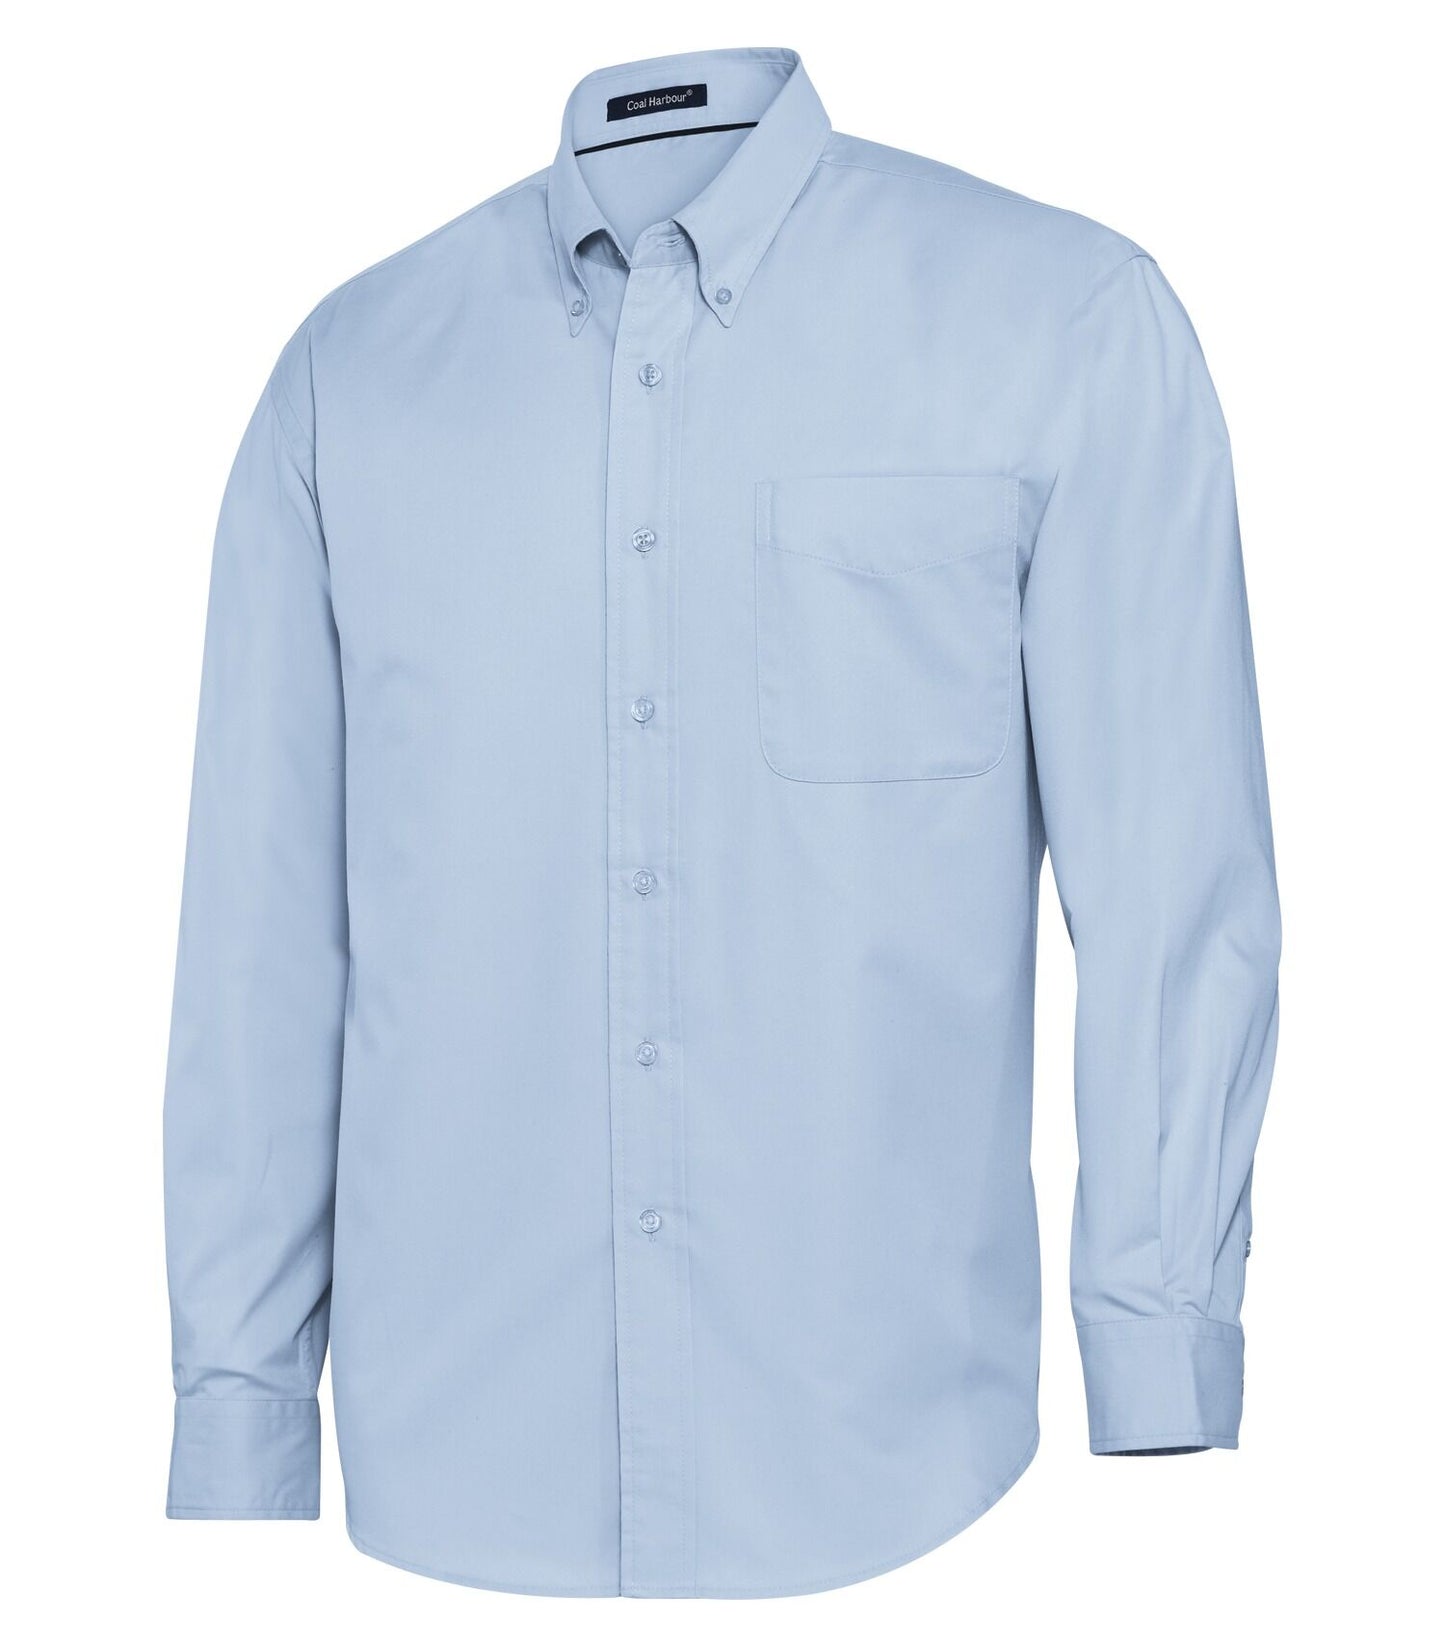 Coal harbour-D610 chemise tissée à manches longues easy care blend pour hommes